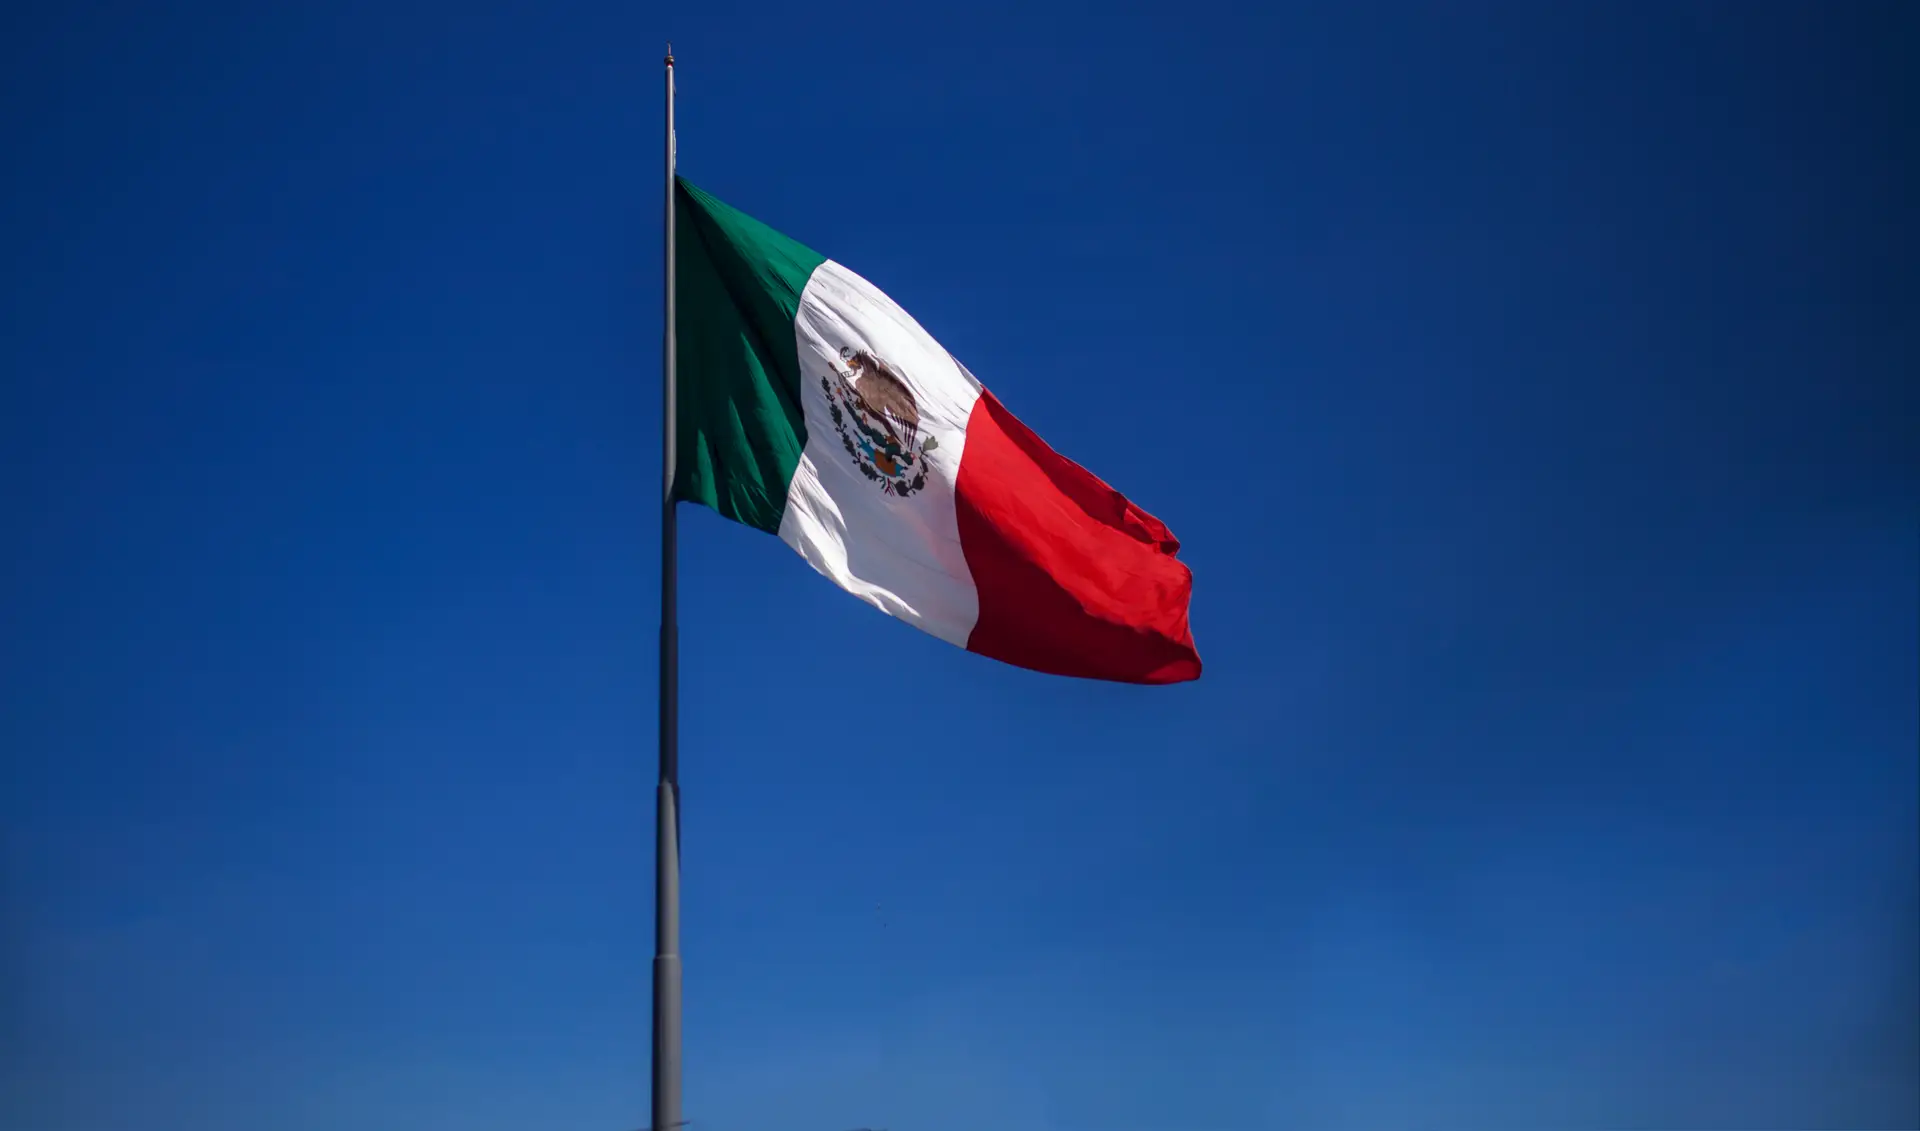 Em dois anos, foram encontrados mais de 5.000 restos humanos num estado mexicano